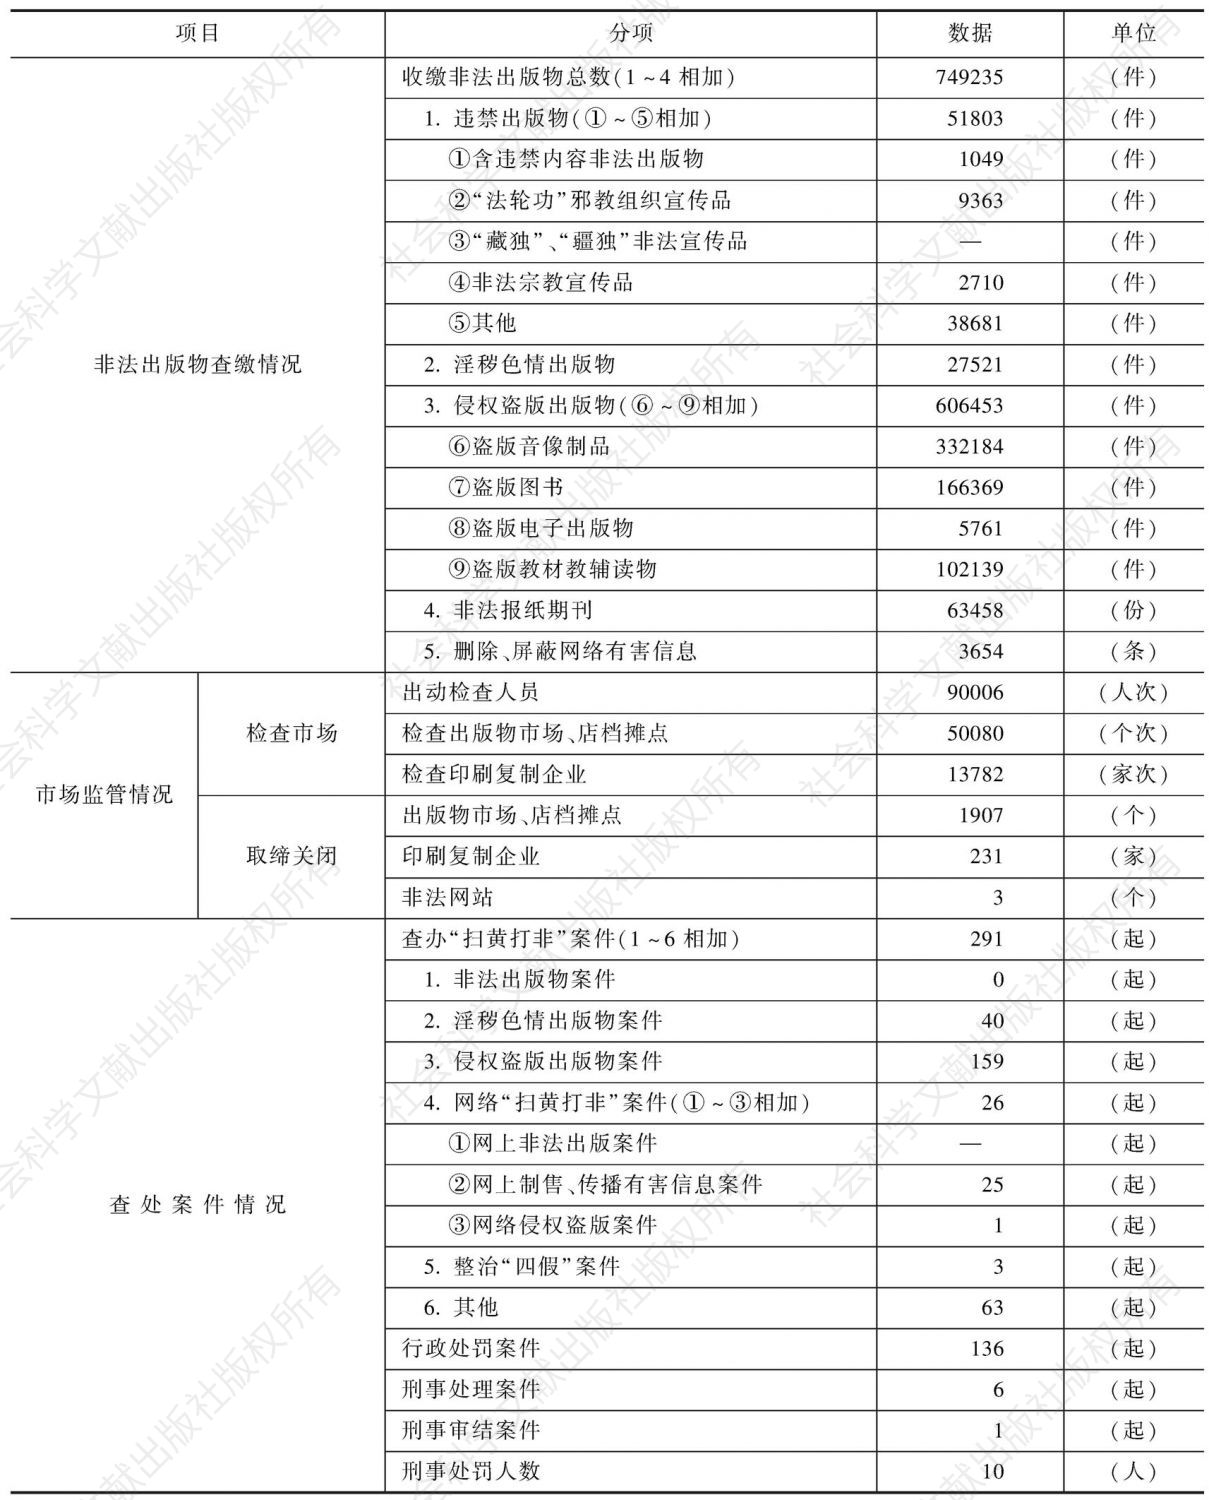 2010年湖北省“扫黄打非”工作成果统计表